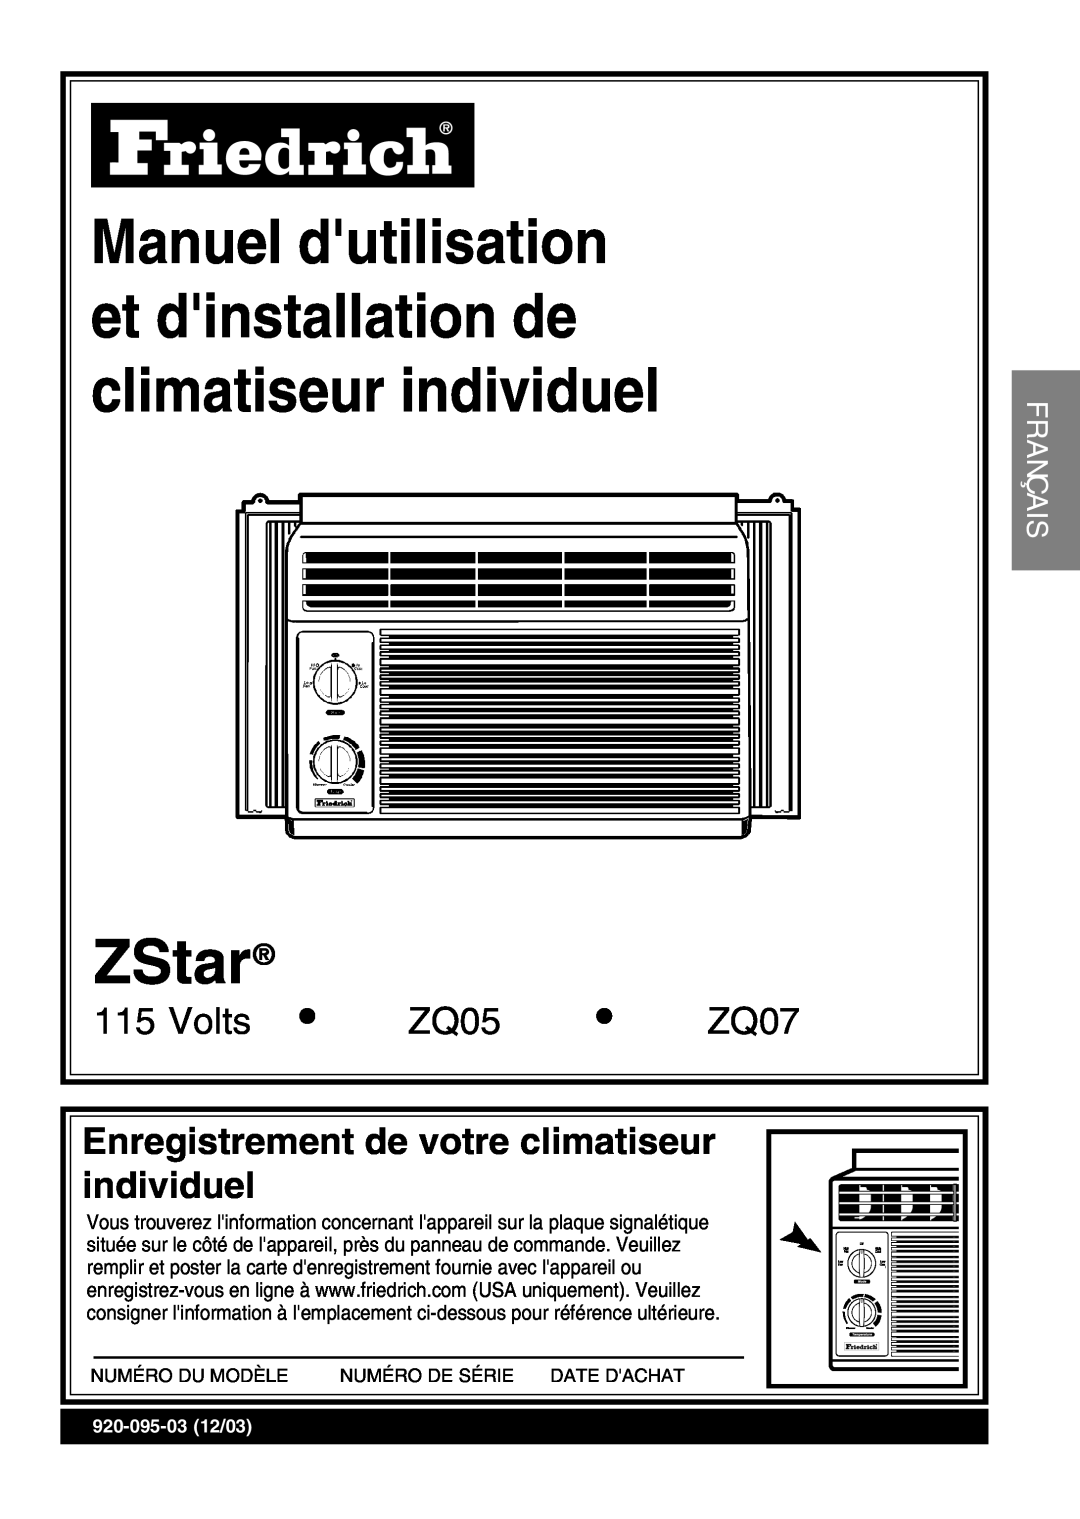 Friedrich ZStar operation manual Enregistrement de votre climatiseur individuel, Franç Ais, Volts, ZQ05, ZQ07 